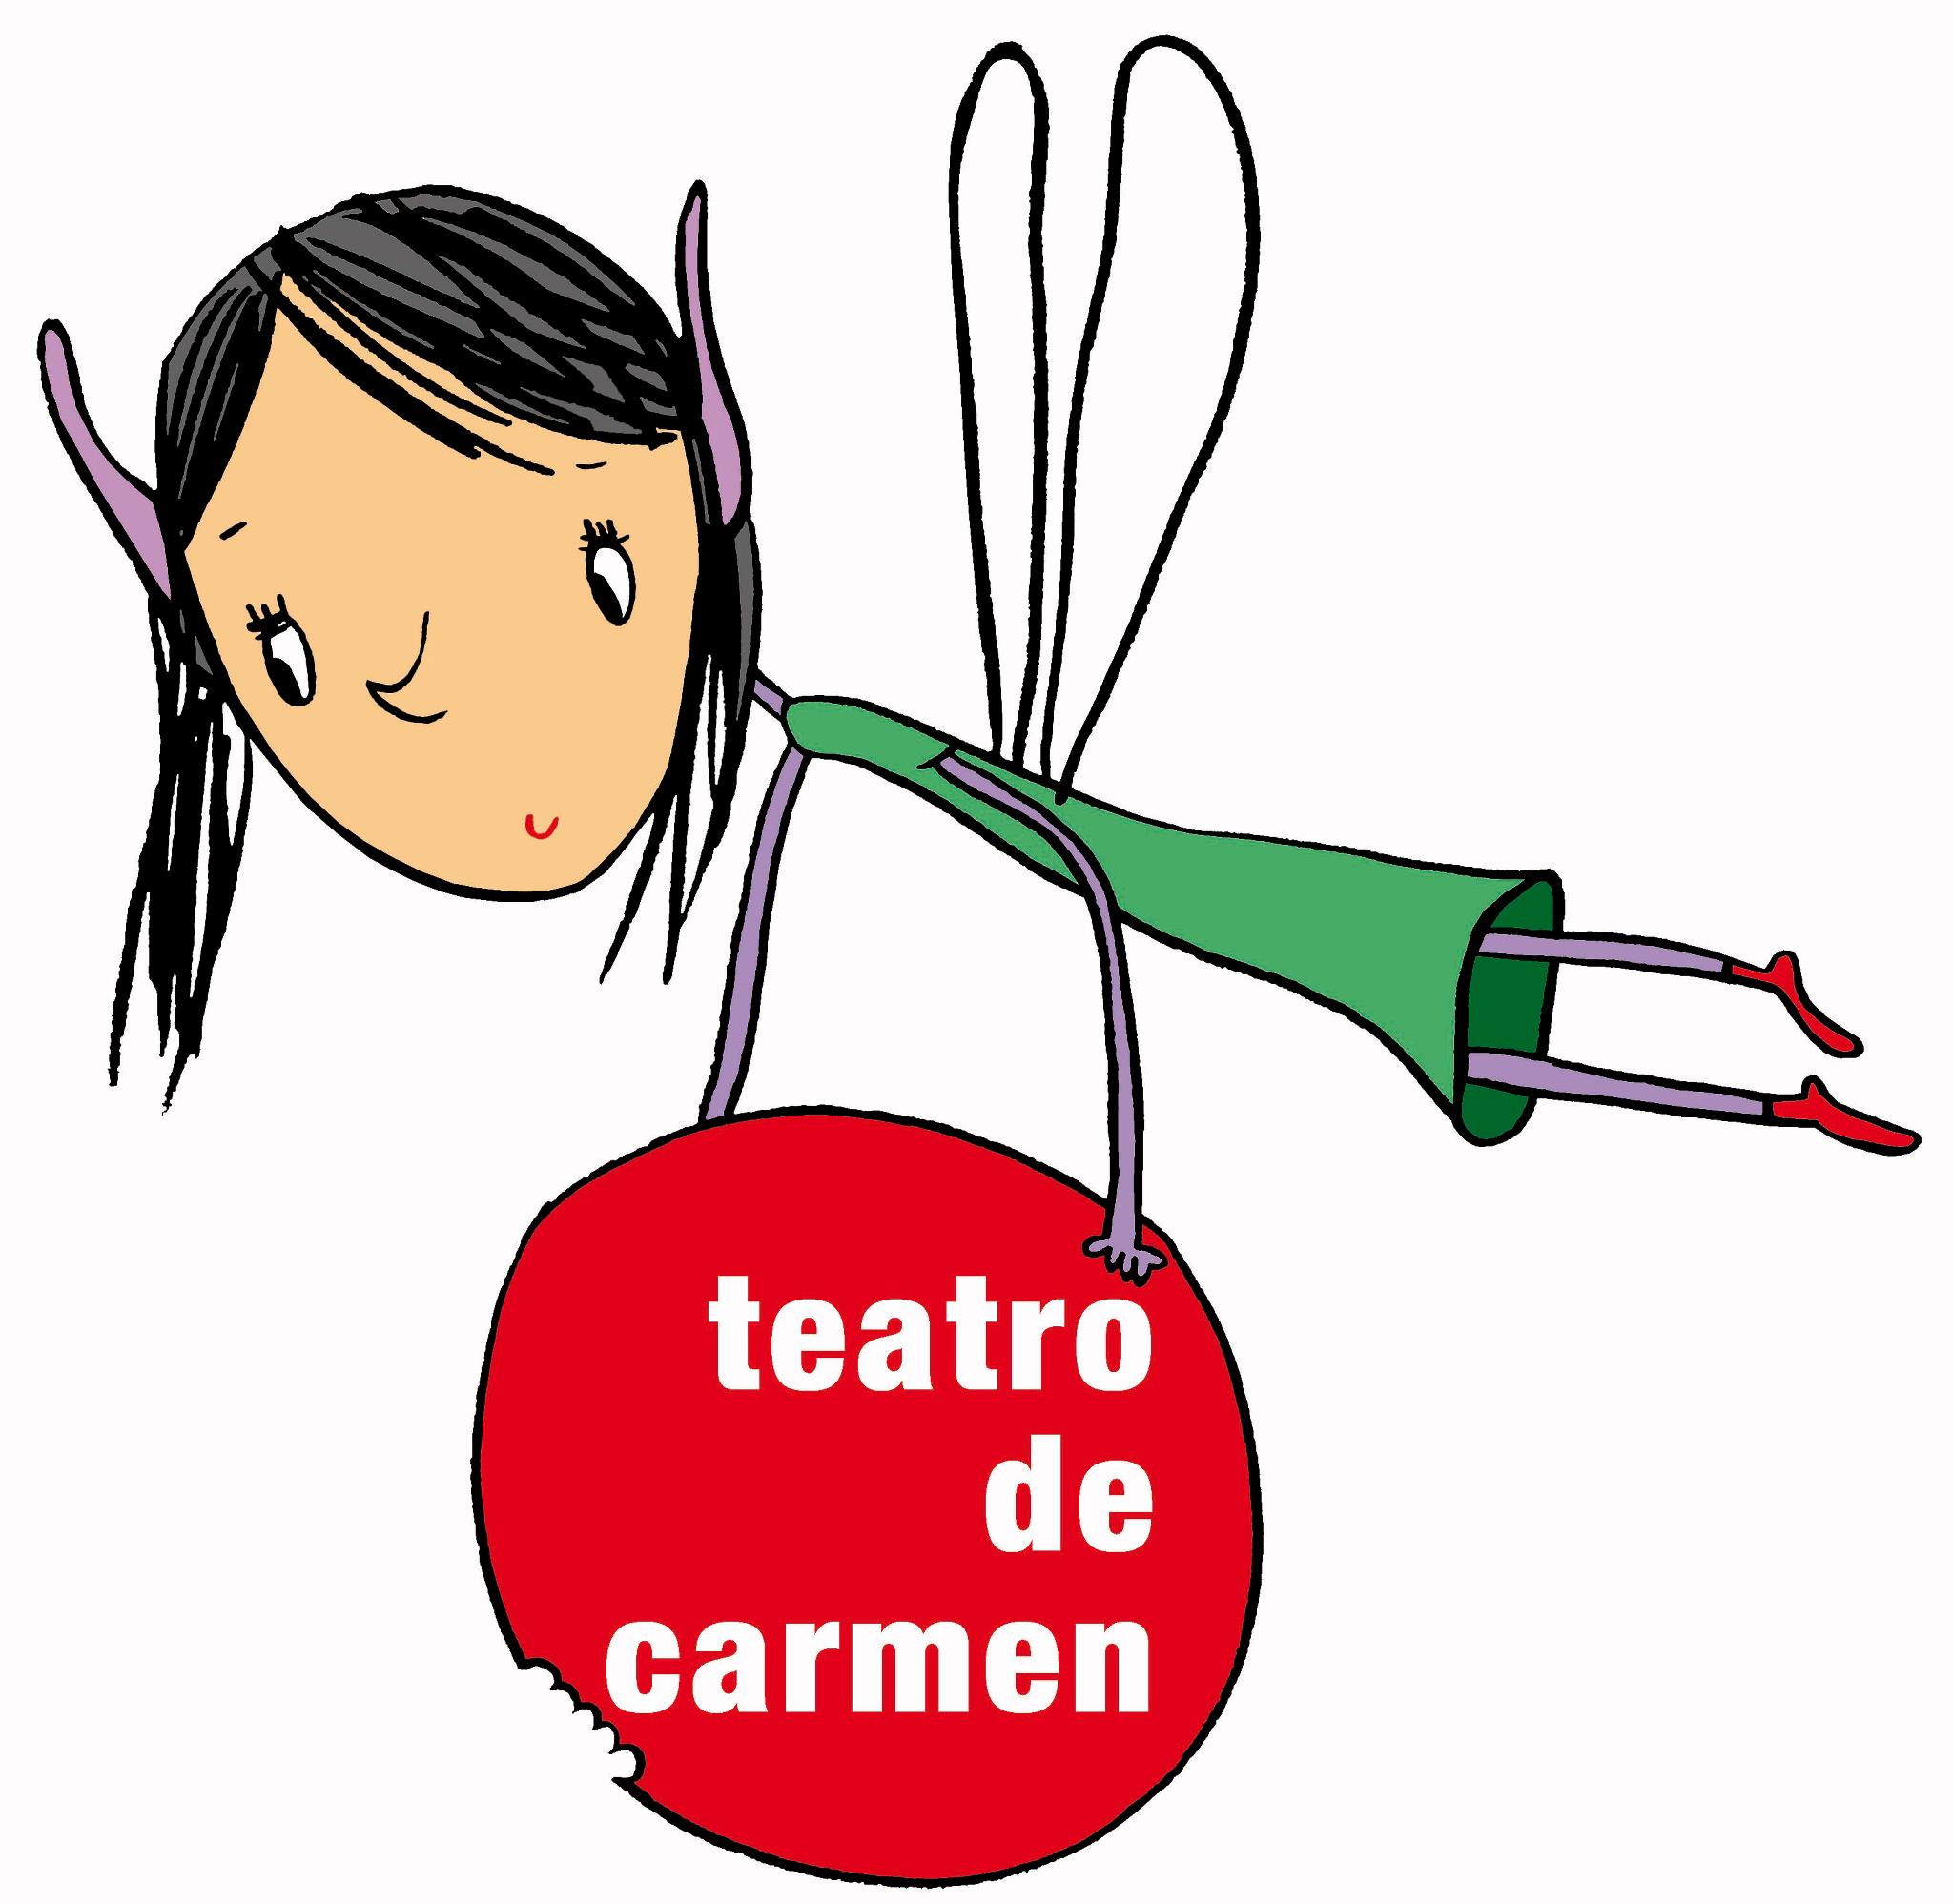 Teatro de Carmen